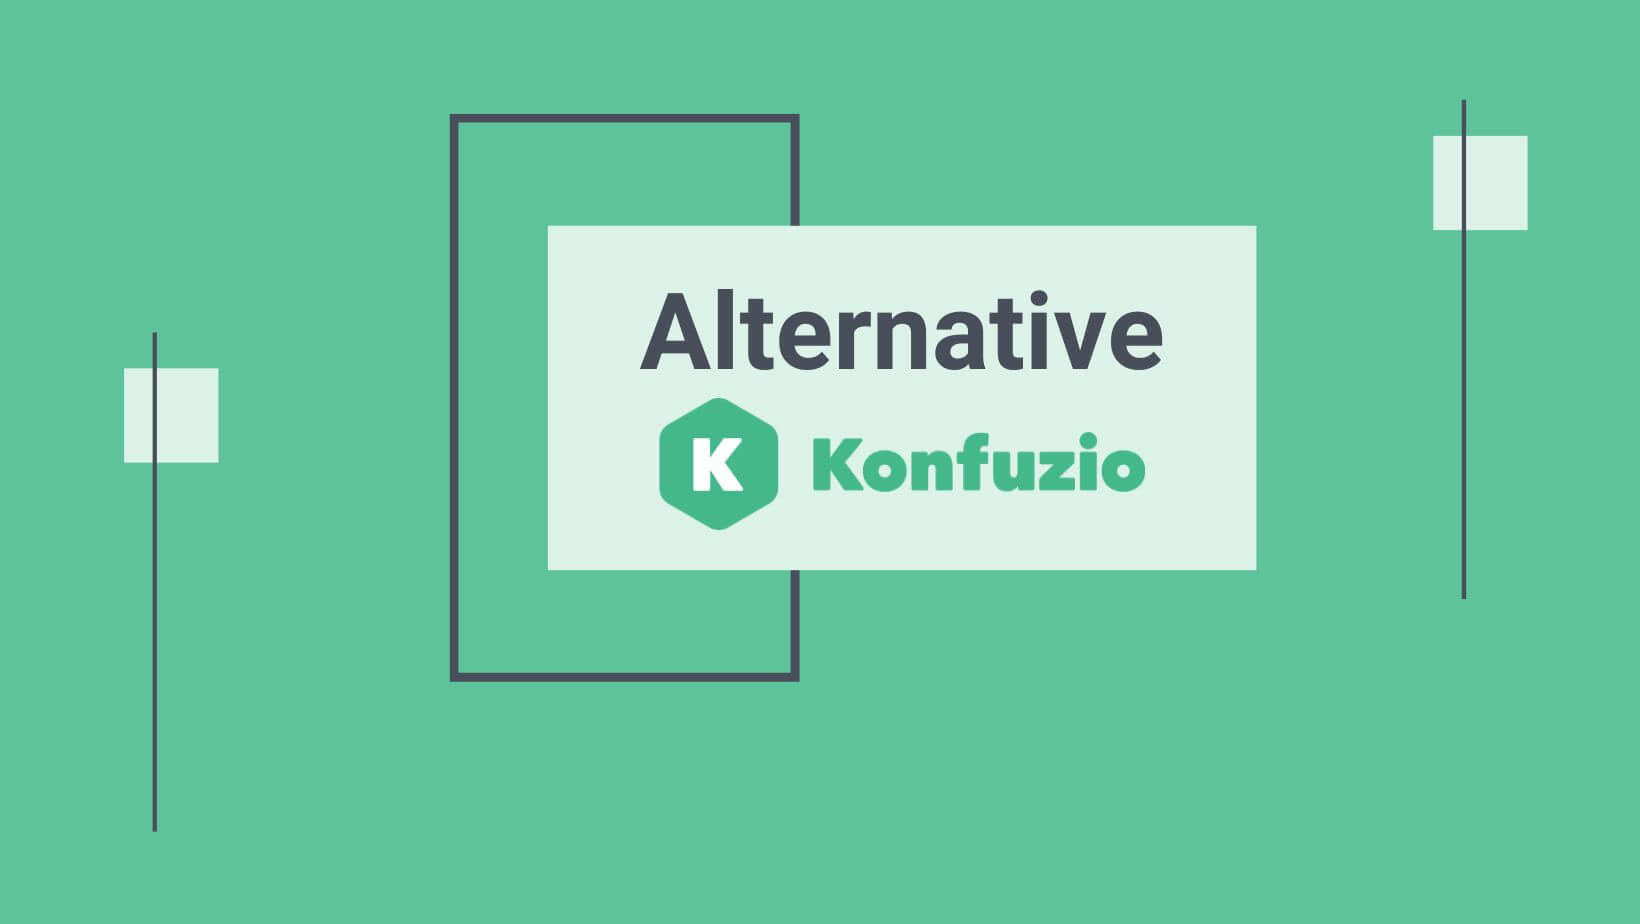 绿色背景的Konfuzio标志，替代物